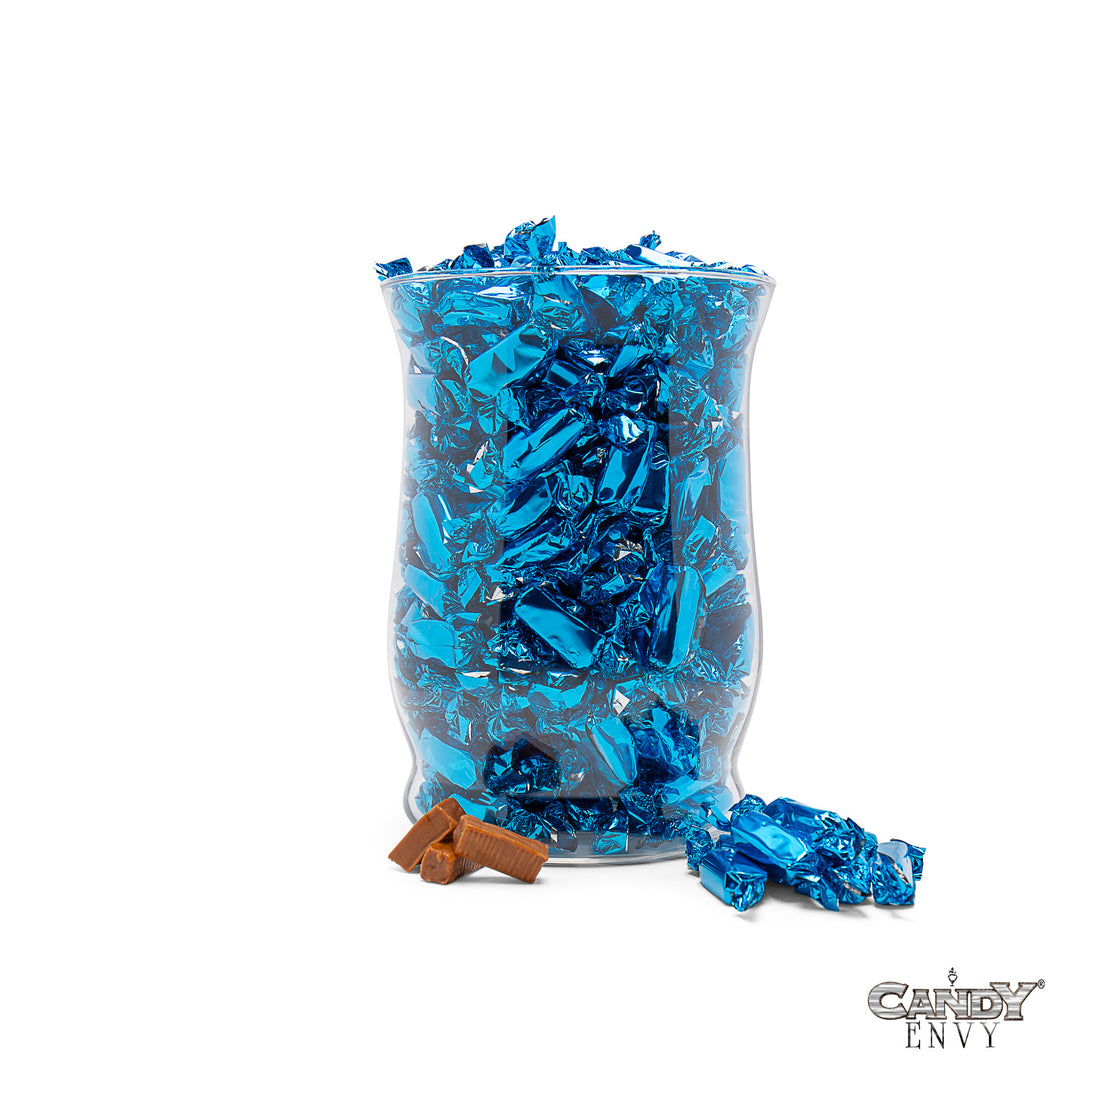 Blue Foil-Wrapped Caramels - 2 lb Bag